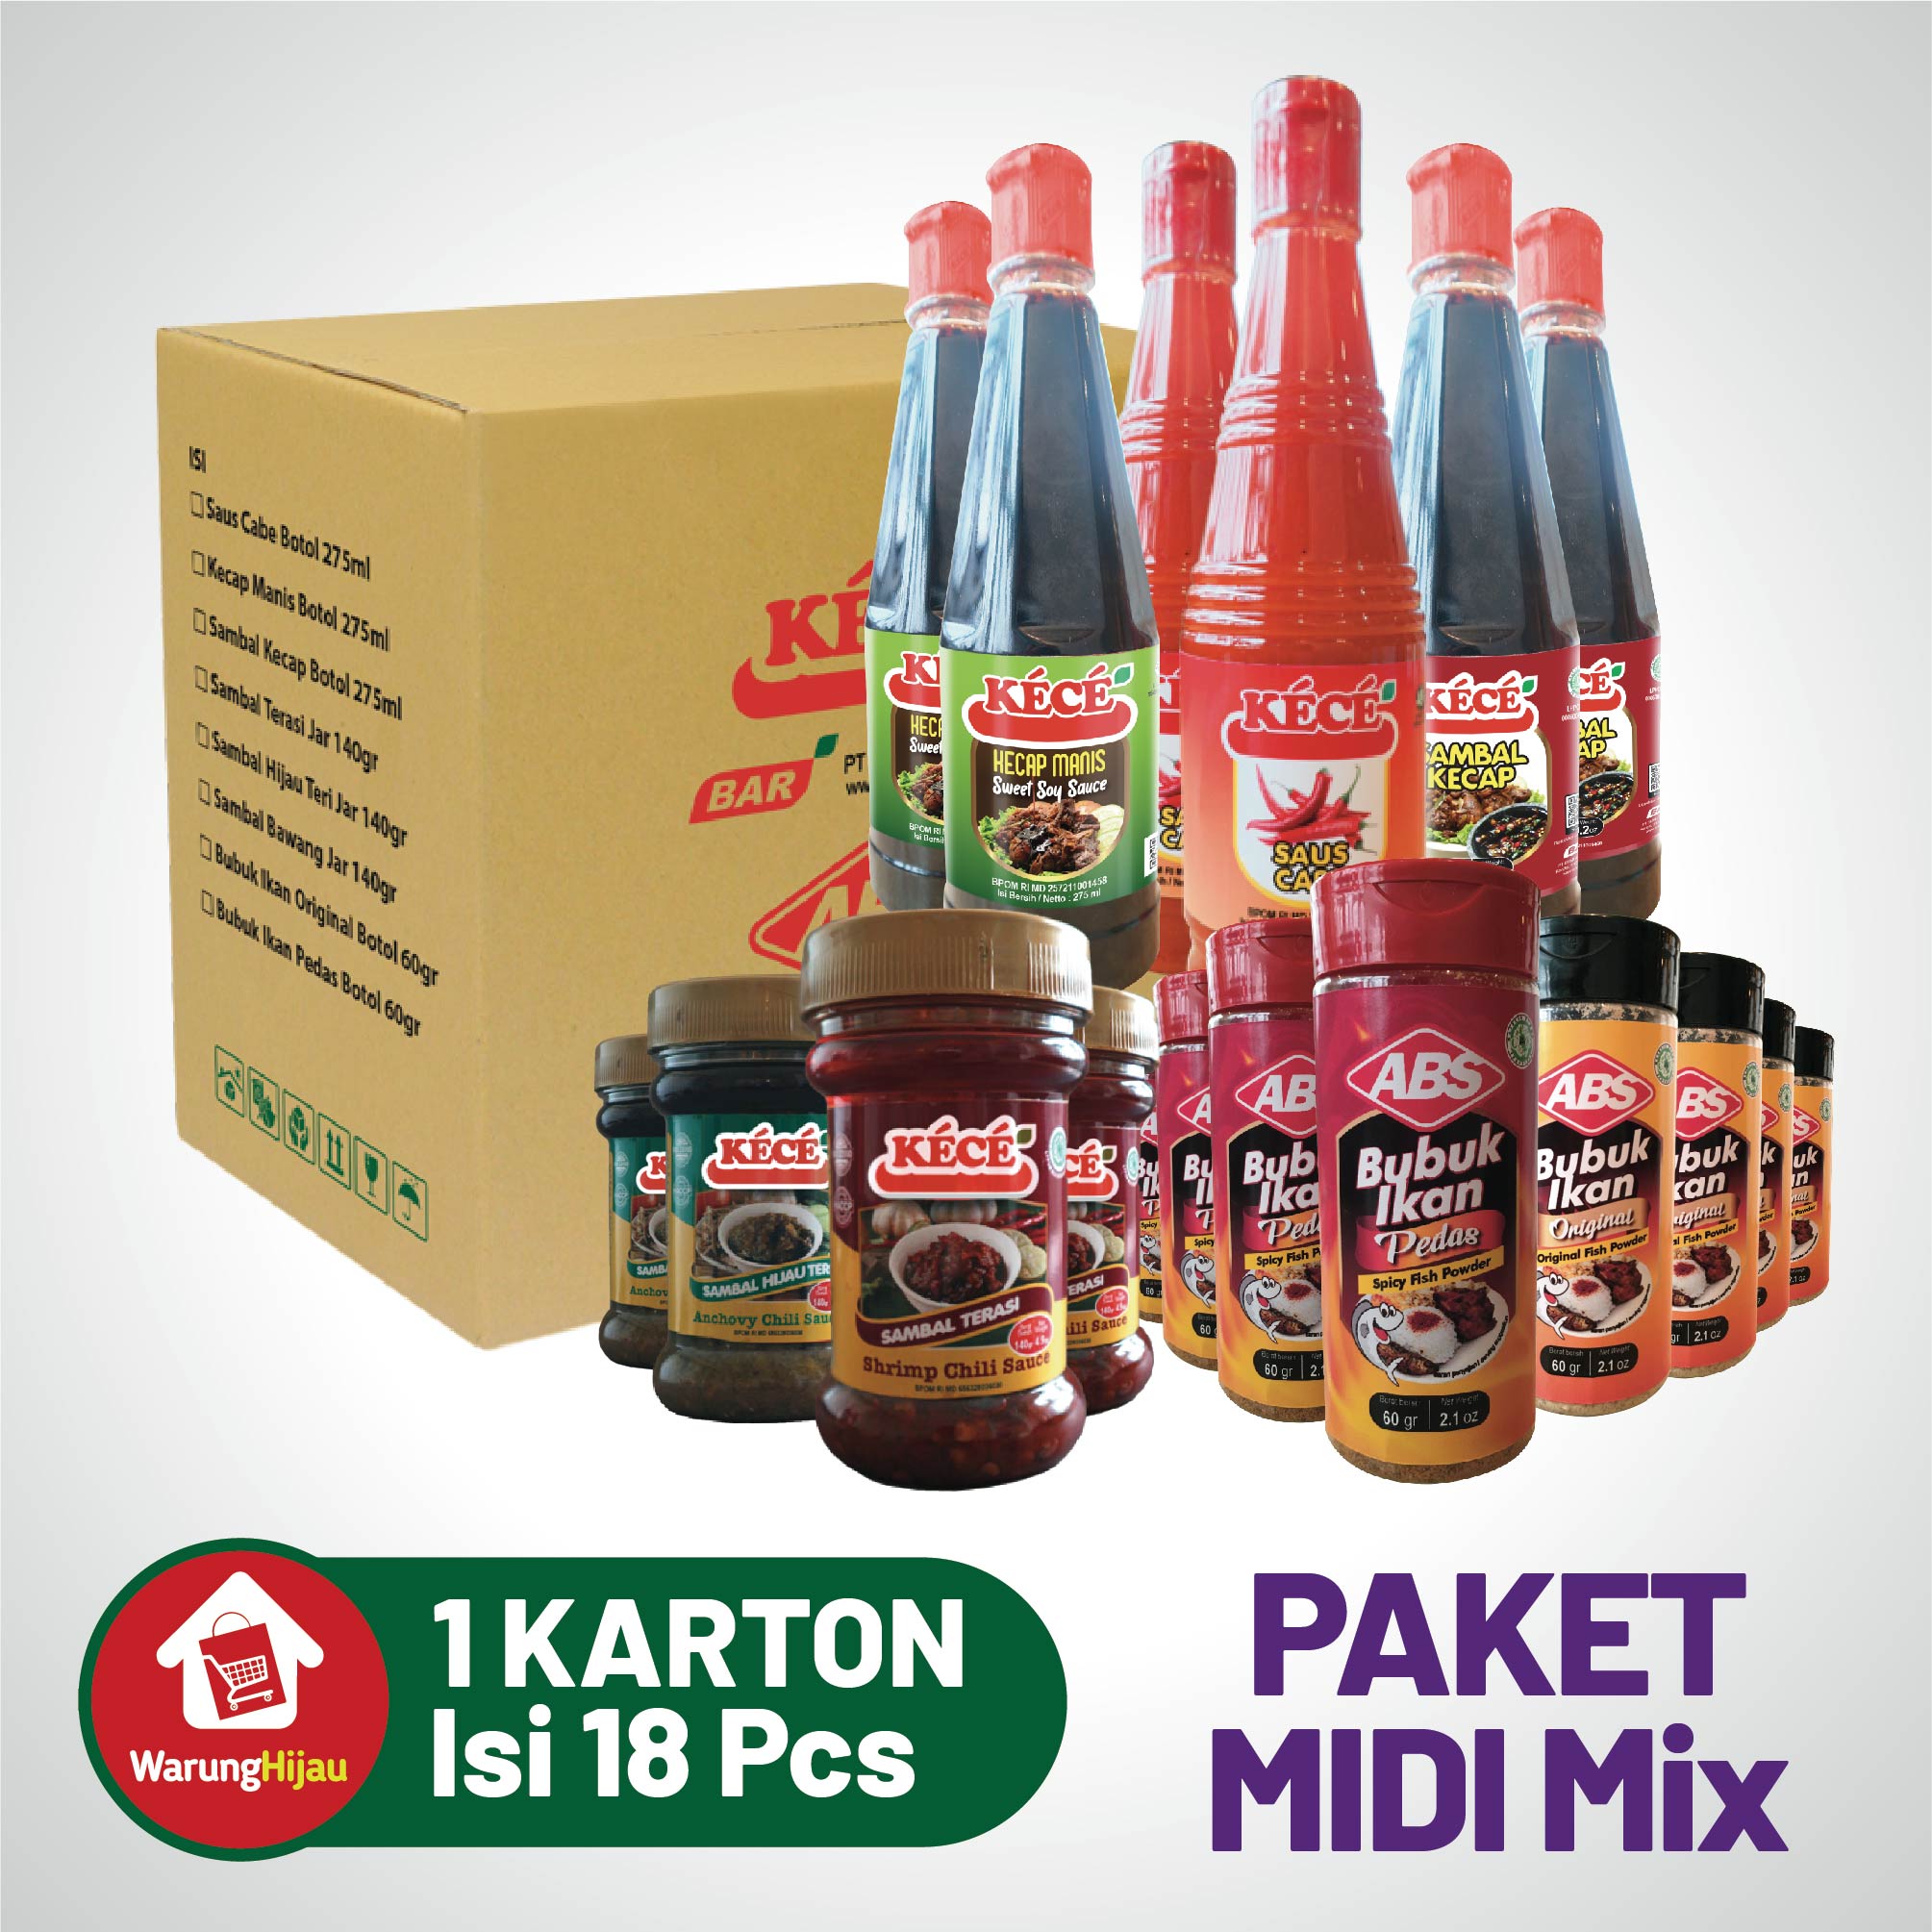 Paket Parcel Midi Mix - 18 Pcs